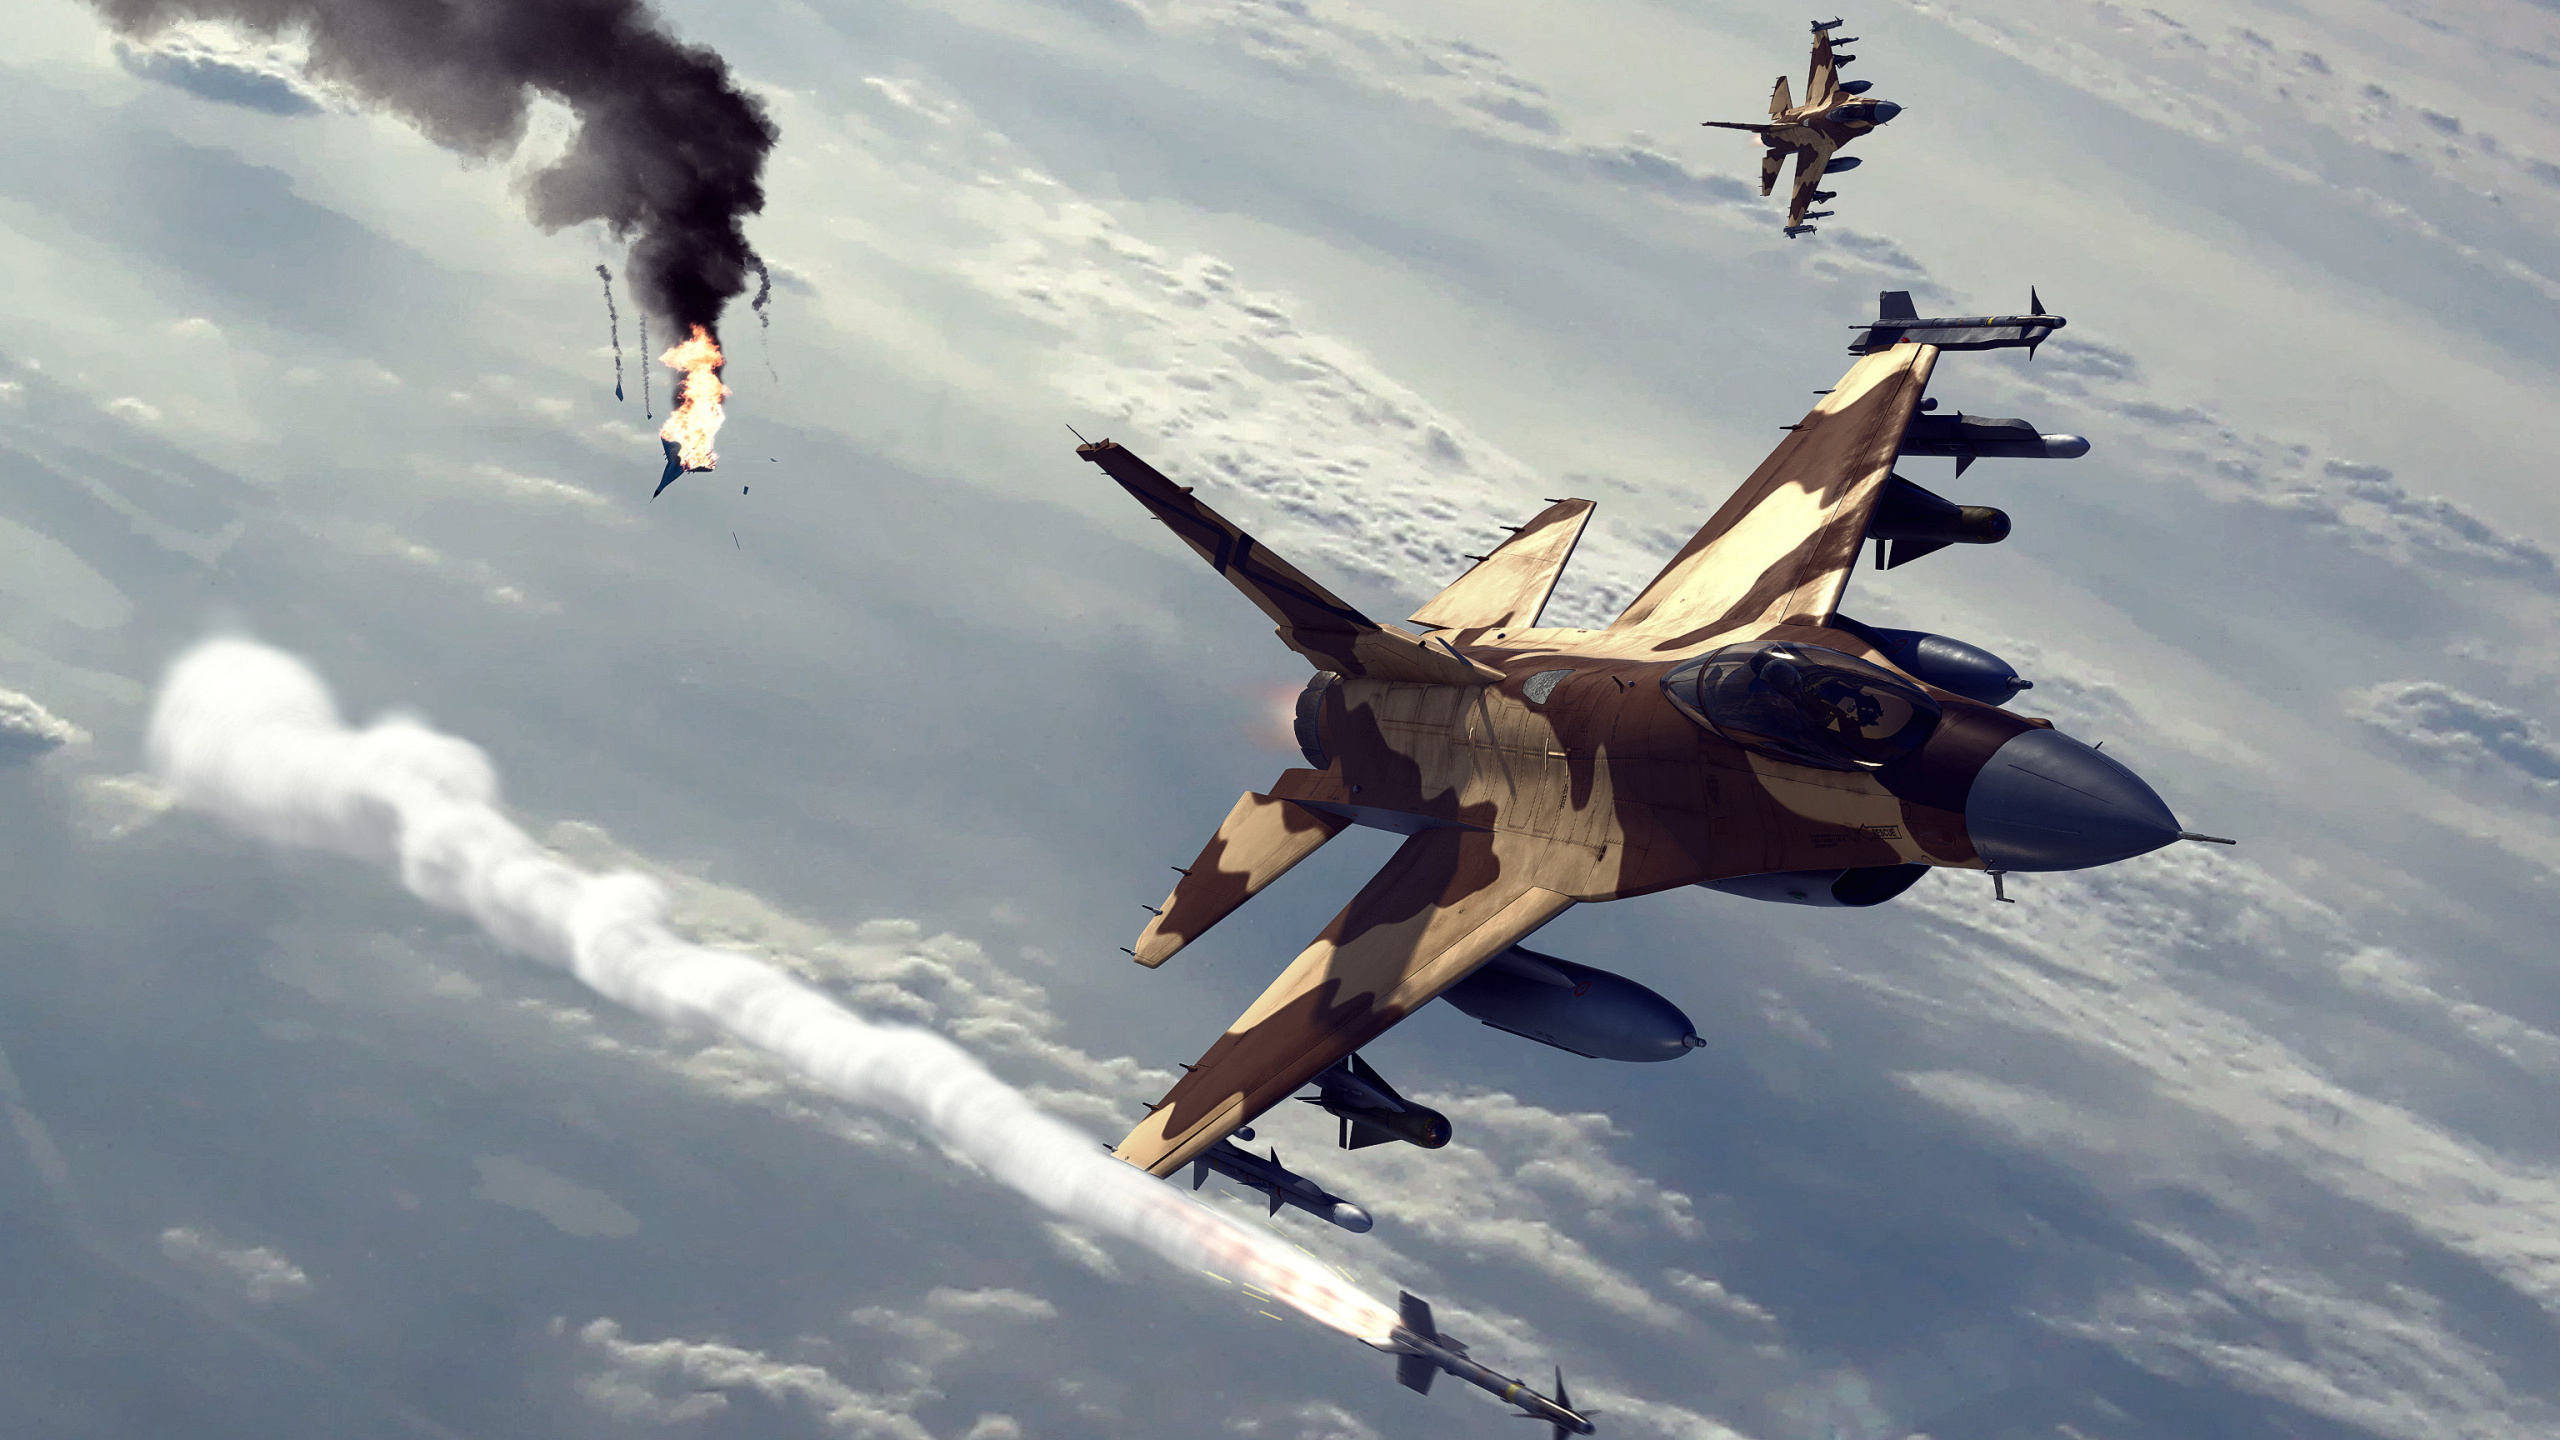 Avión de Combate Marrón en el Cielo. Wallpaper in 2560x1440 Resolution